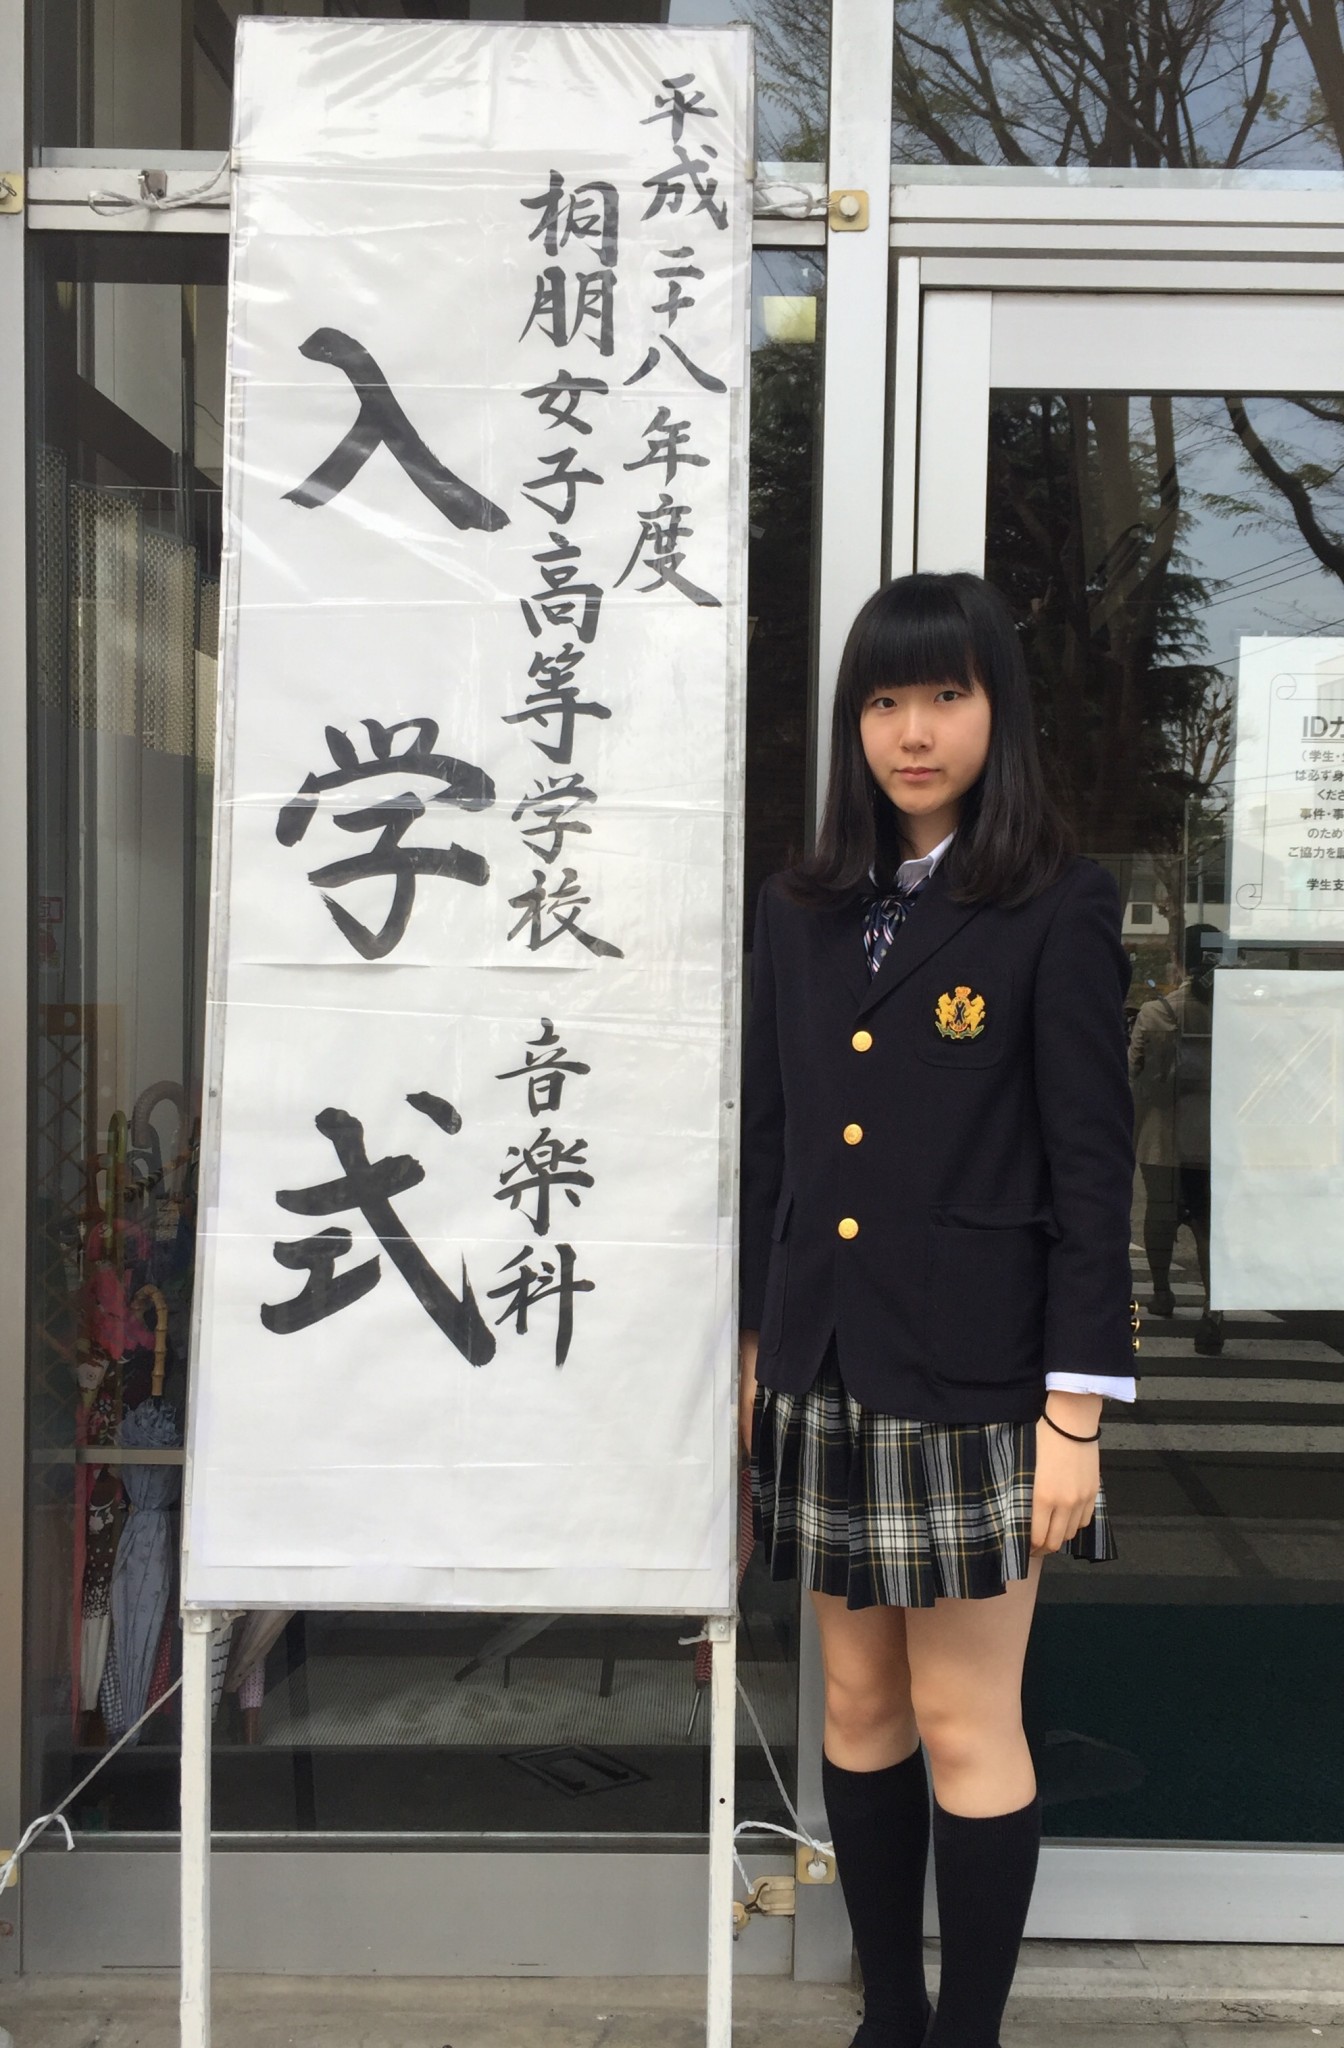 桐朋女子高 音楽科 入学式に行って 阿佐ヶ谷ピアノ教室